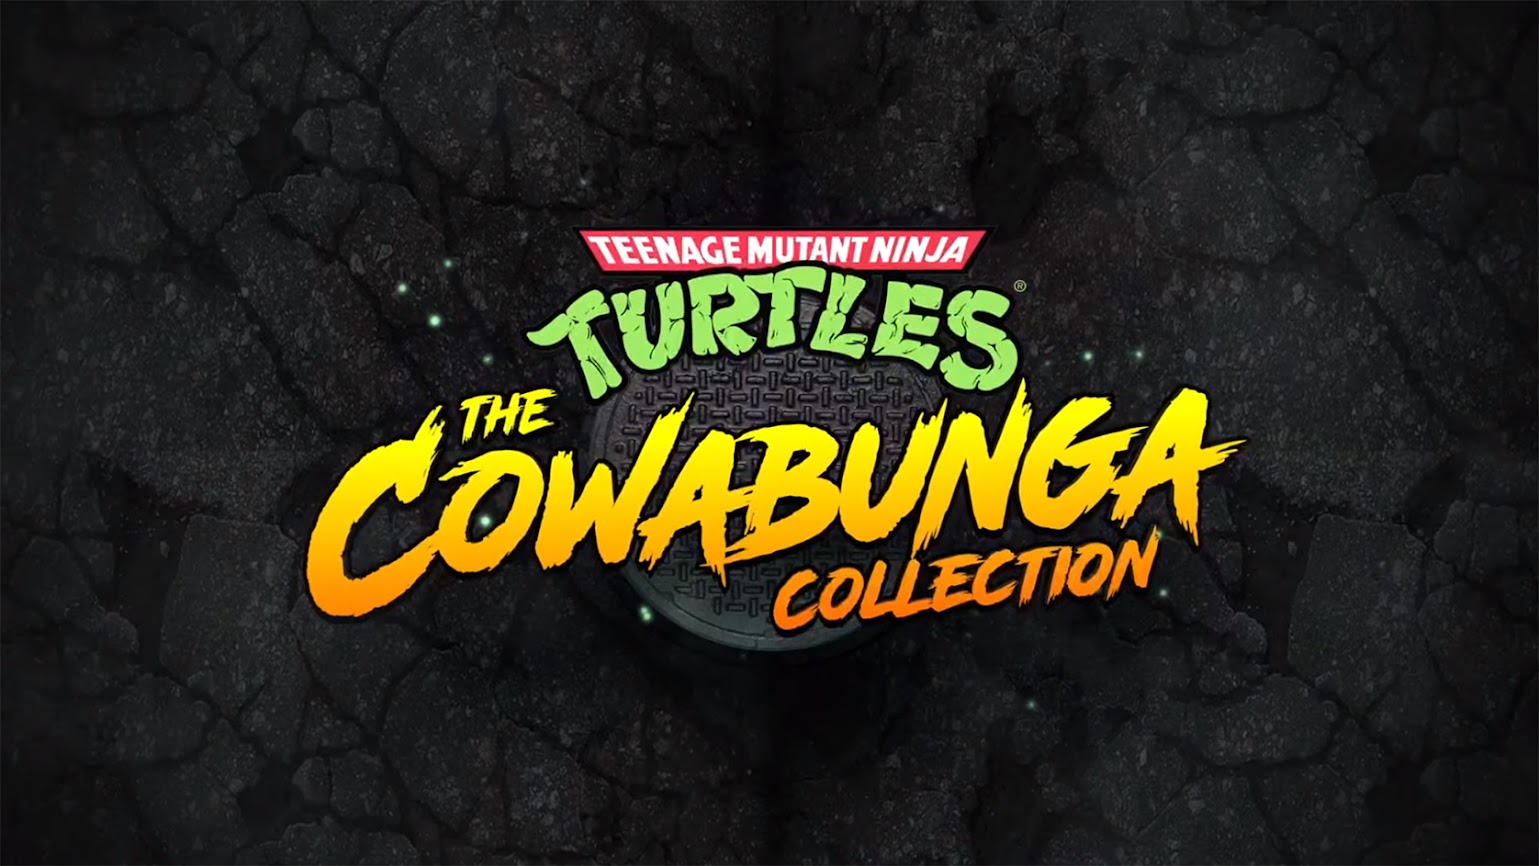 Teenage Cowabunga Mutant Ninja Revealed The Turtles: Collection